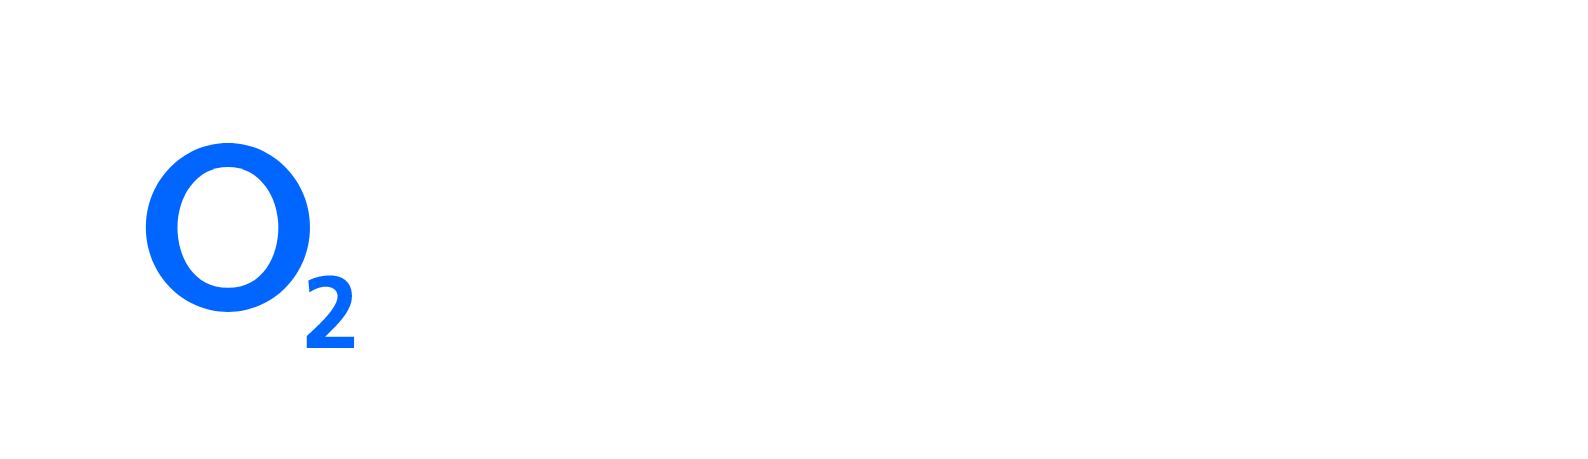 Telefónica Deutschland (O2) Logo groß für dunkle Hintergründe (transparentes PNG)